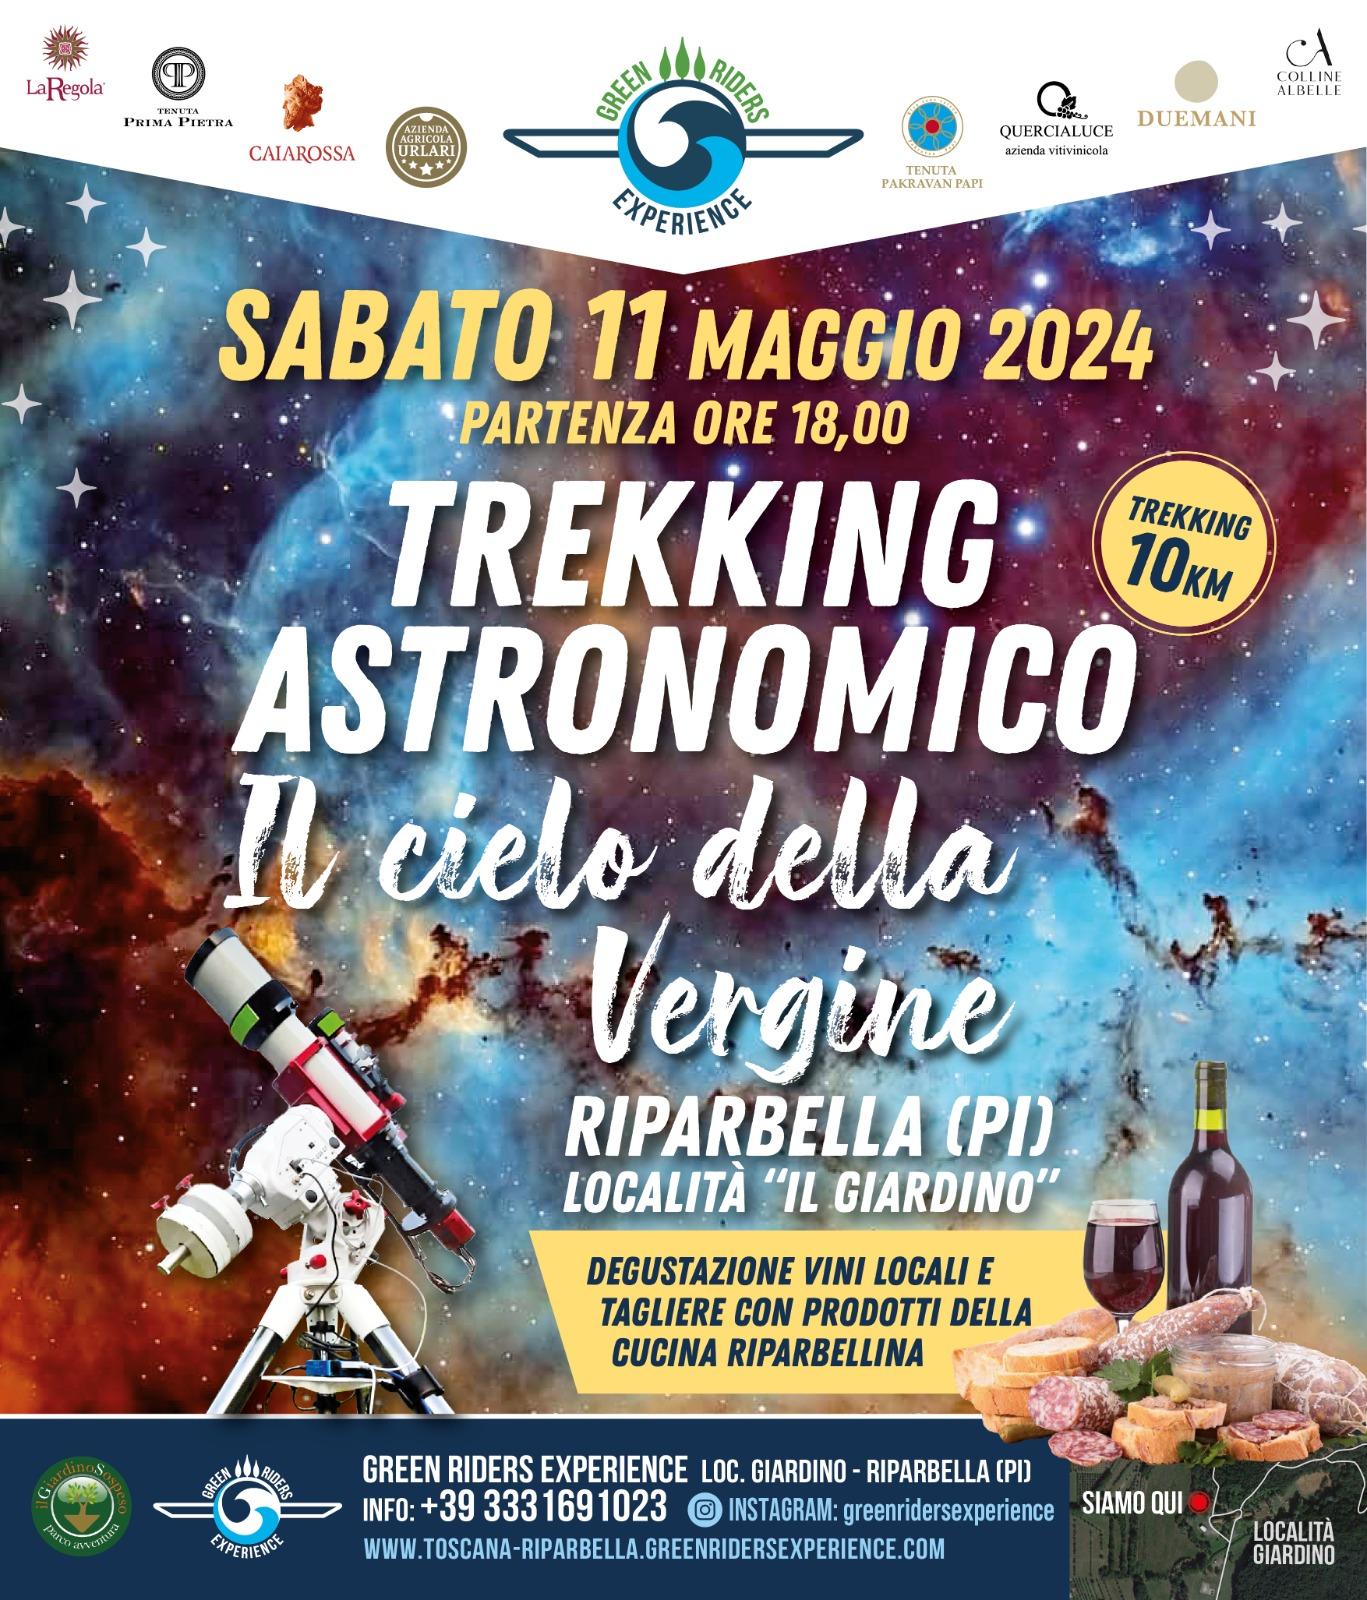 TREKKING ASTRONOMICO SABATO 11 MAGGIO 2024 "IL DELLA VERGINE, LA STAGIONE DELLE GALASSIE."